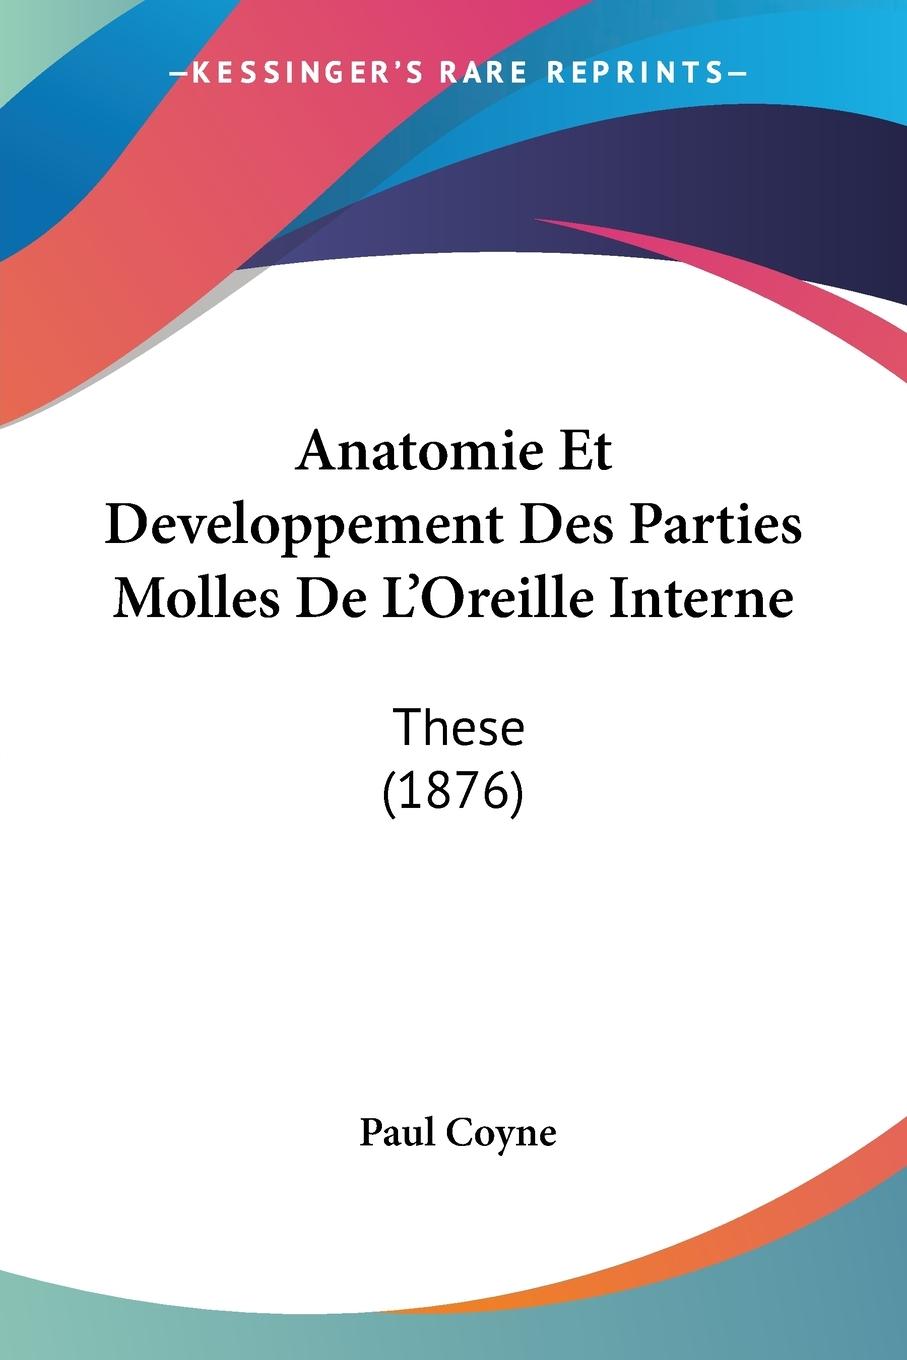 Anatomie Et Developpement Des Parties Molles De L Oreille Interne - Coyne, Paul